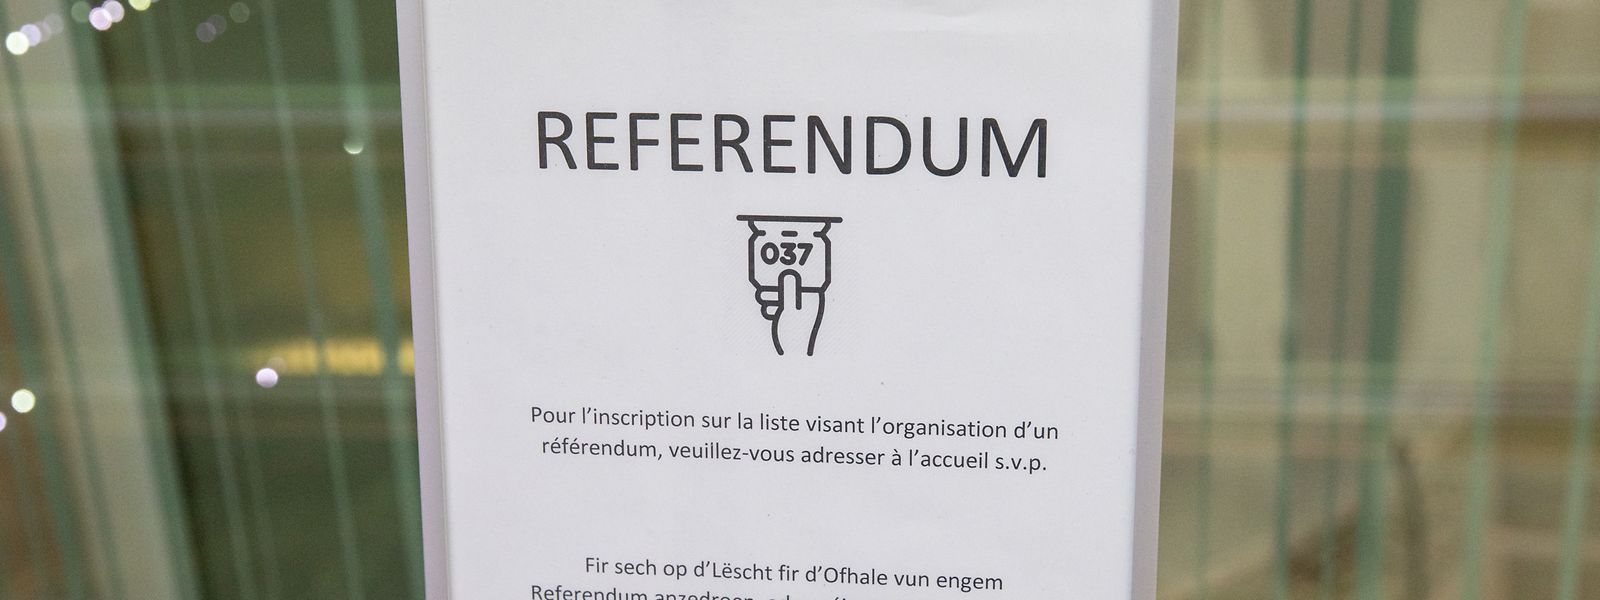 Les communes doivent faire savoir au plus tard le 22 février quand et où les listes seront ouvertes à la signature pour l'organisation d'un référendum.